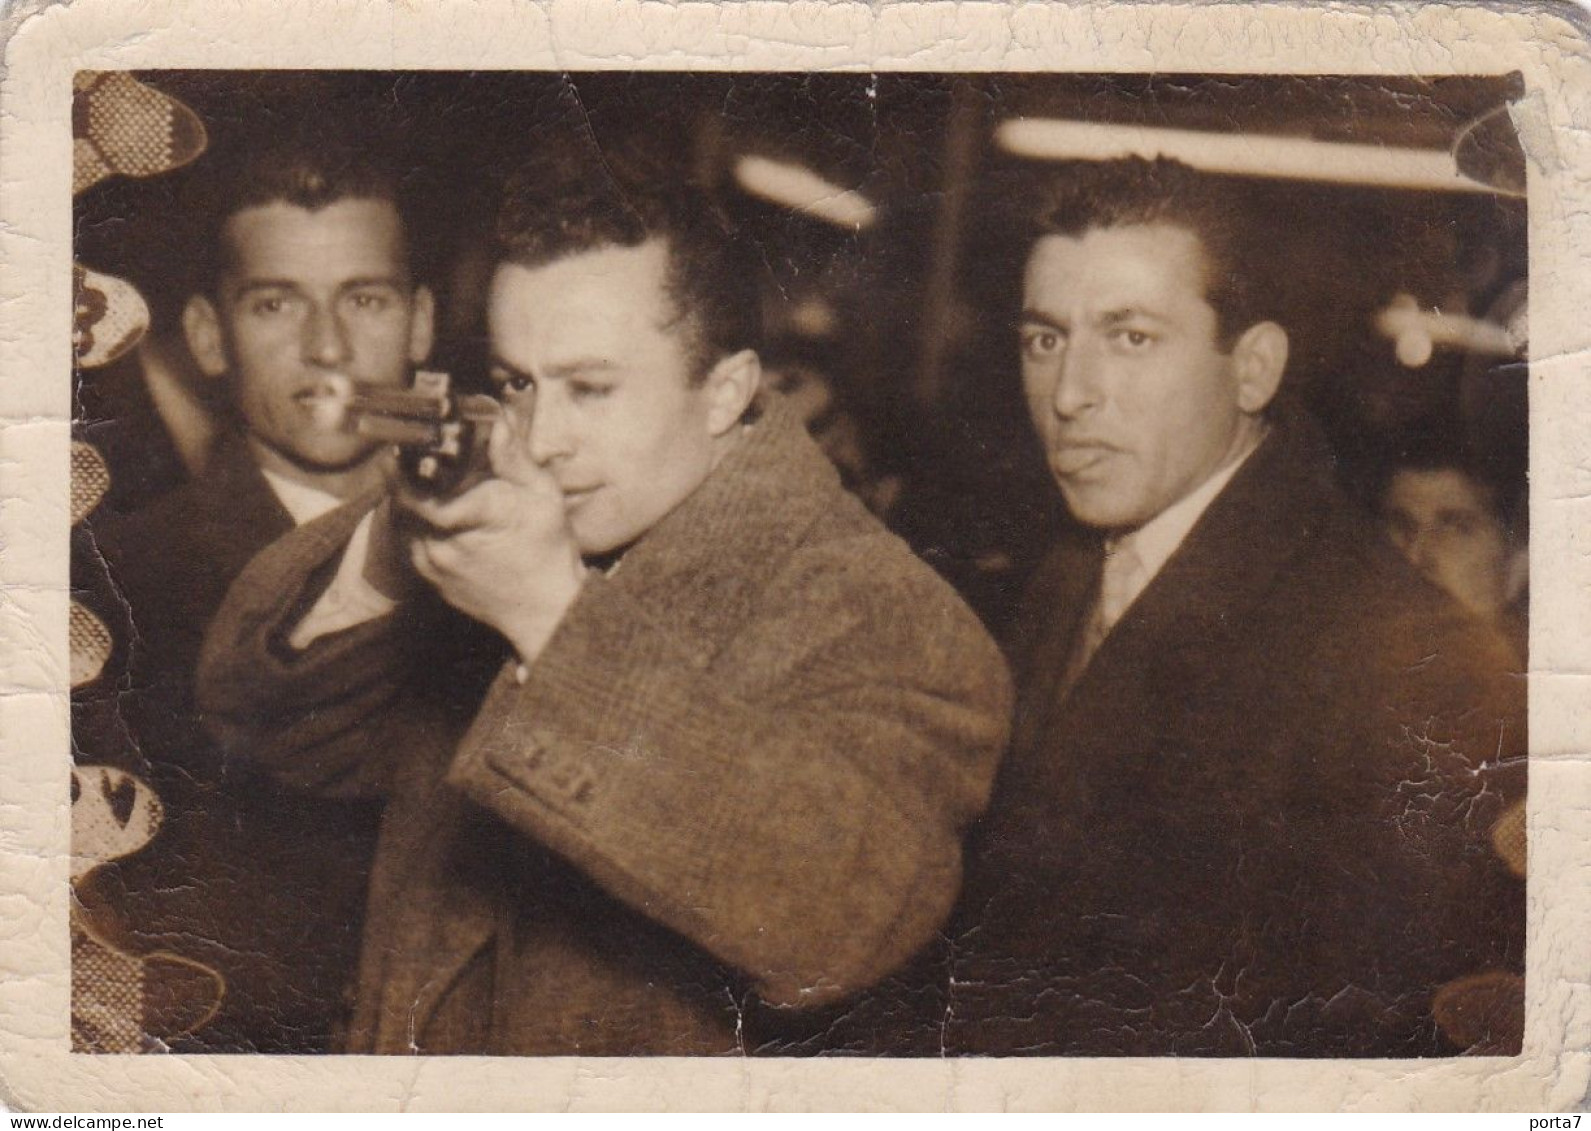 LUNA PARK TIRO A SEGNO - FOTO FLASH - TIR A LA CARABINE  - FOTO  ORIGINALE 1957 - Anonyme Personen